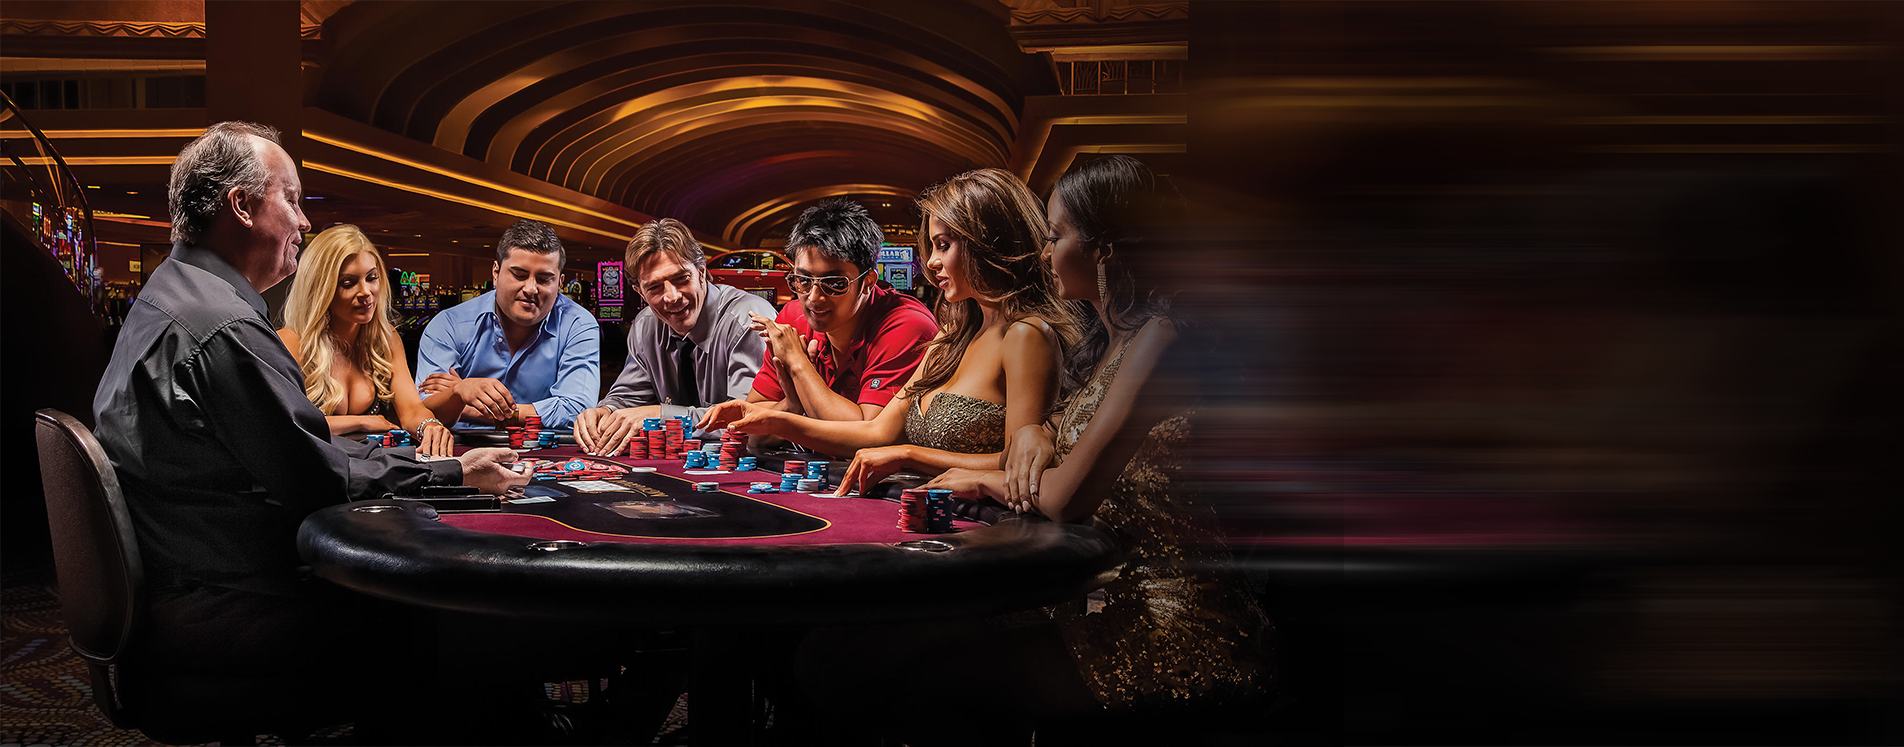 Самое популярное казино онлайн в россии topic 1win casino скачать на андроид бесплатно